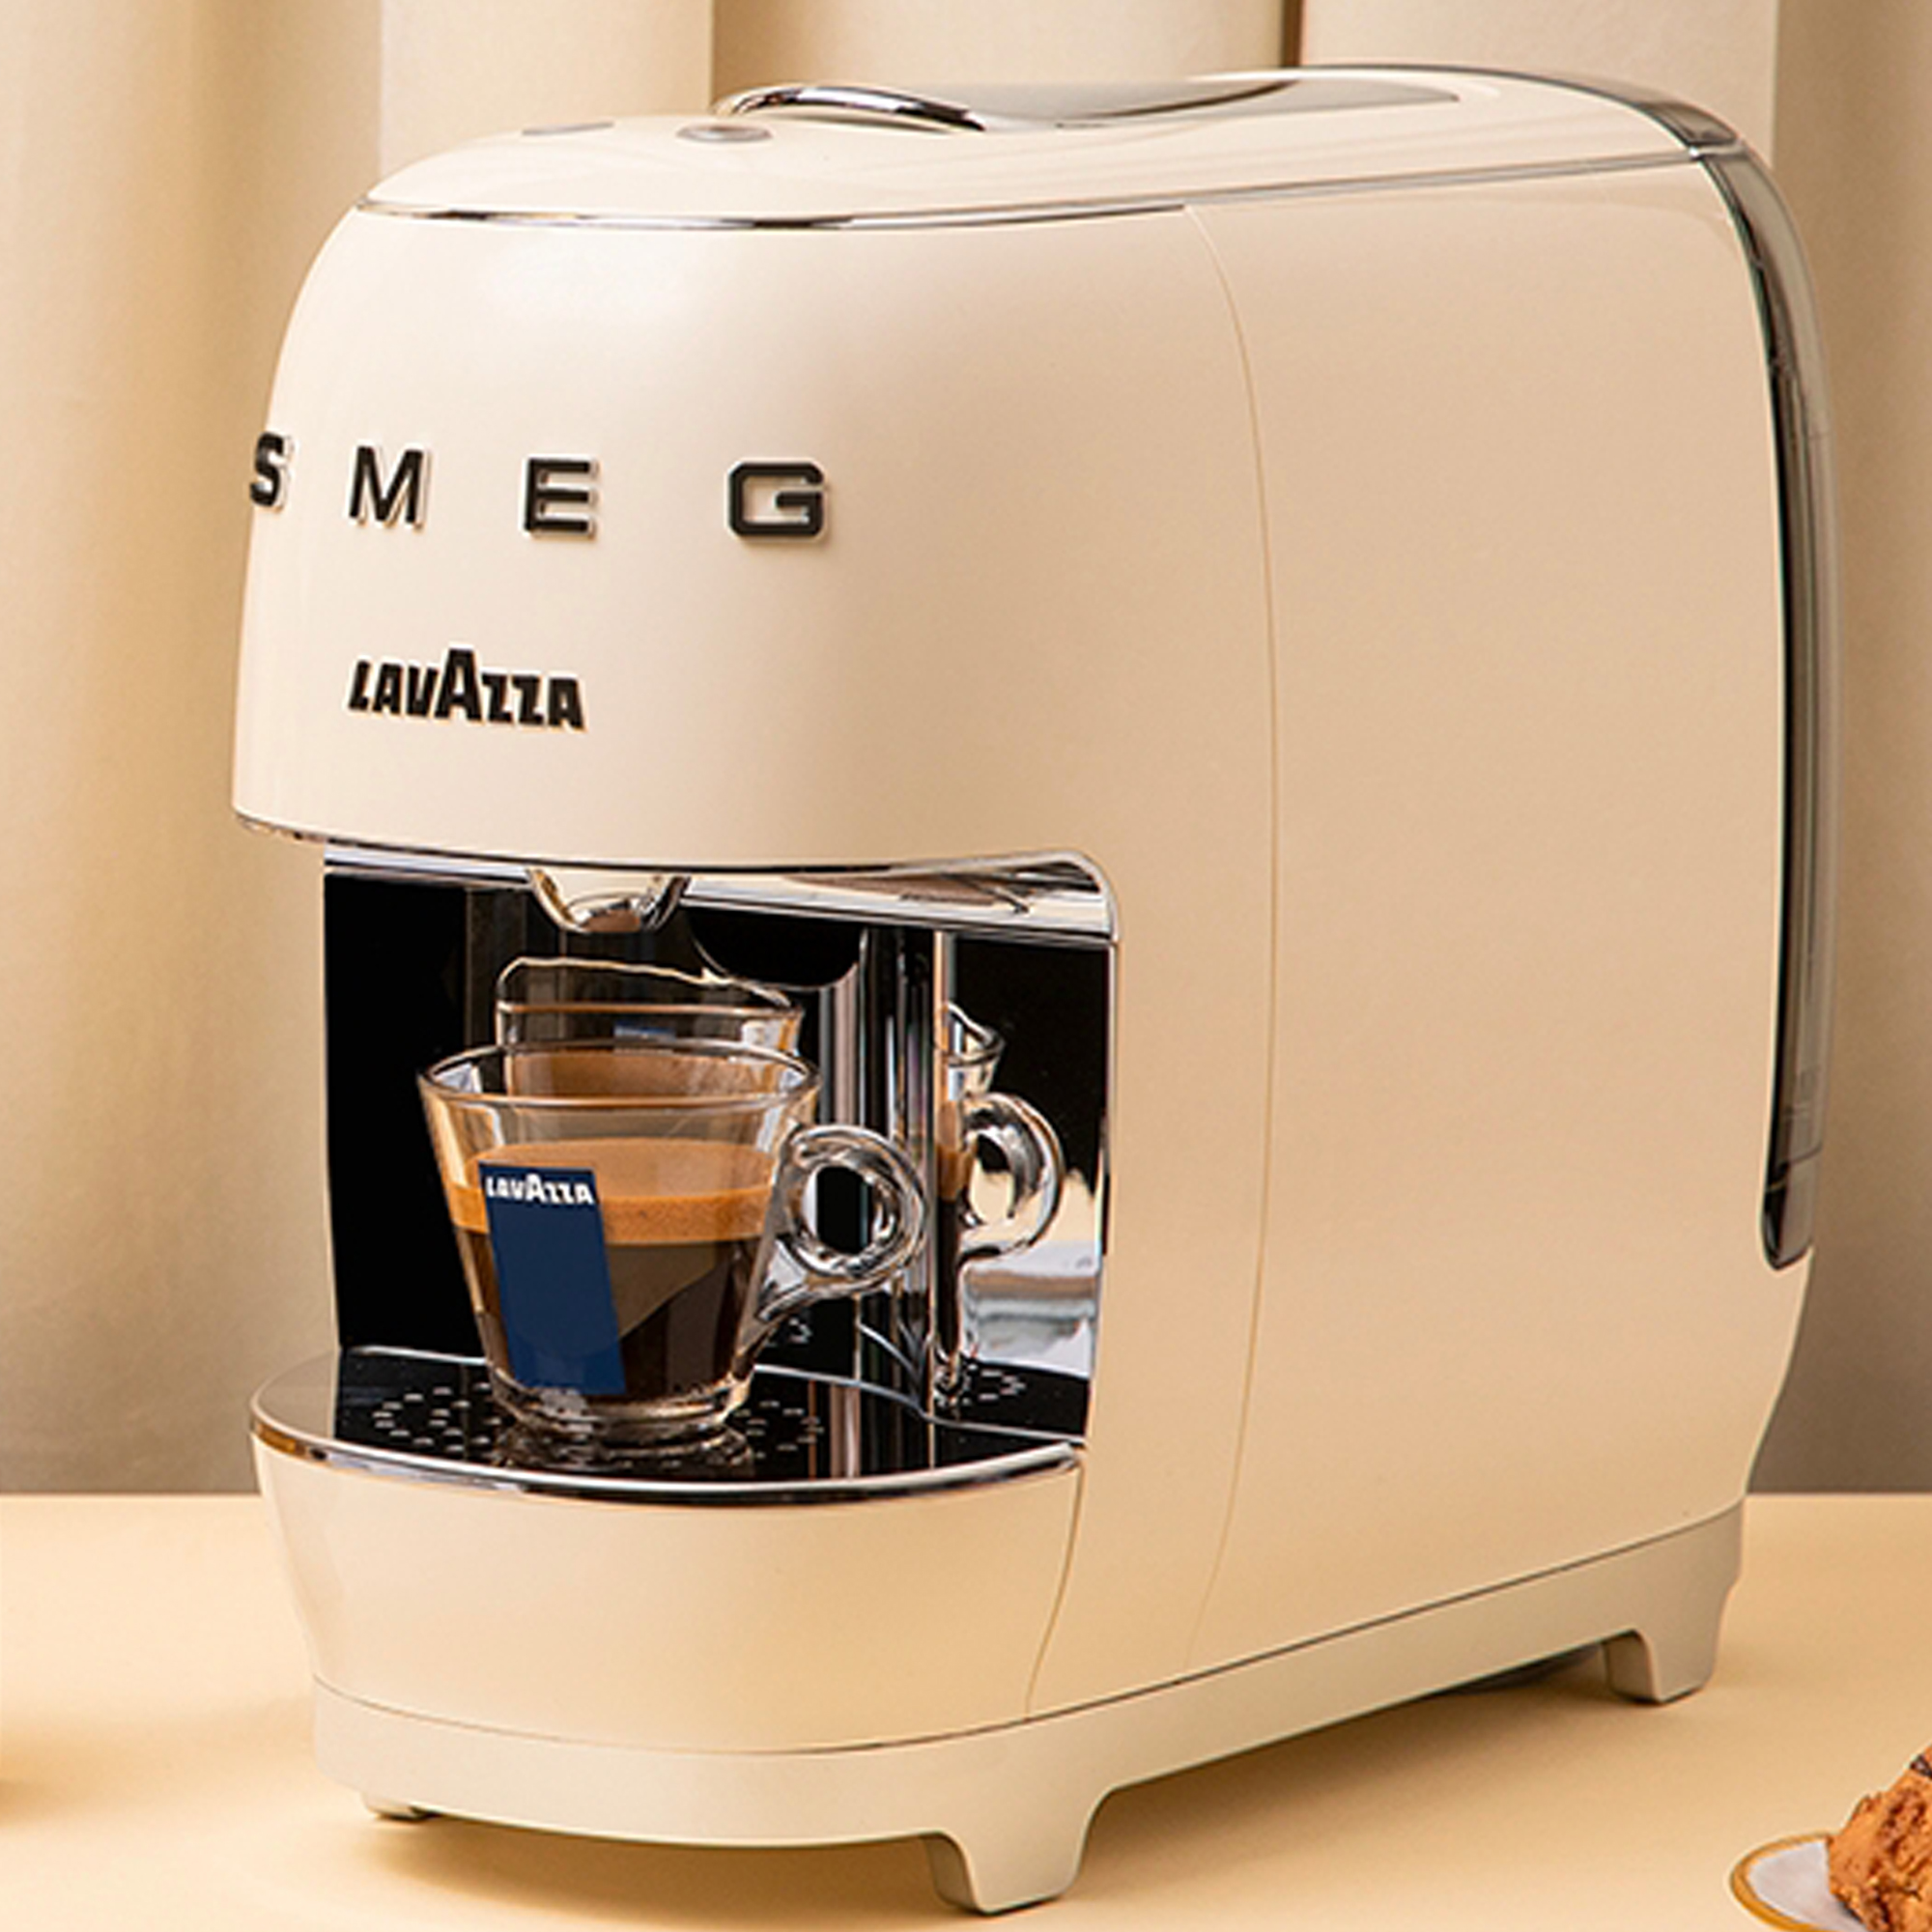 Lavazza A Modo Mio SMEG coffee machine review - an espresso lover's dream